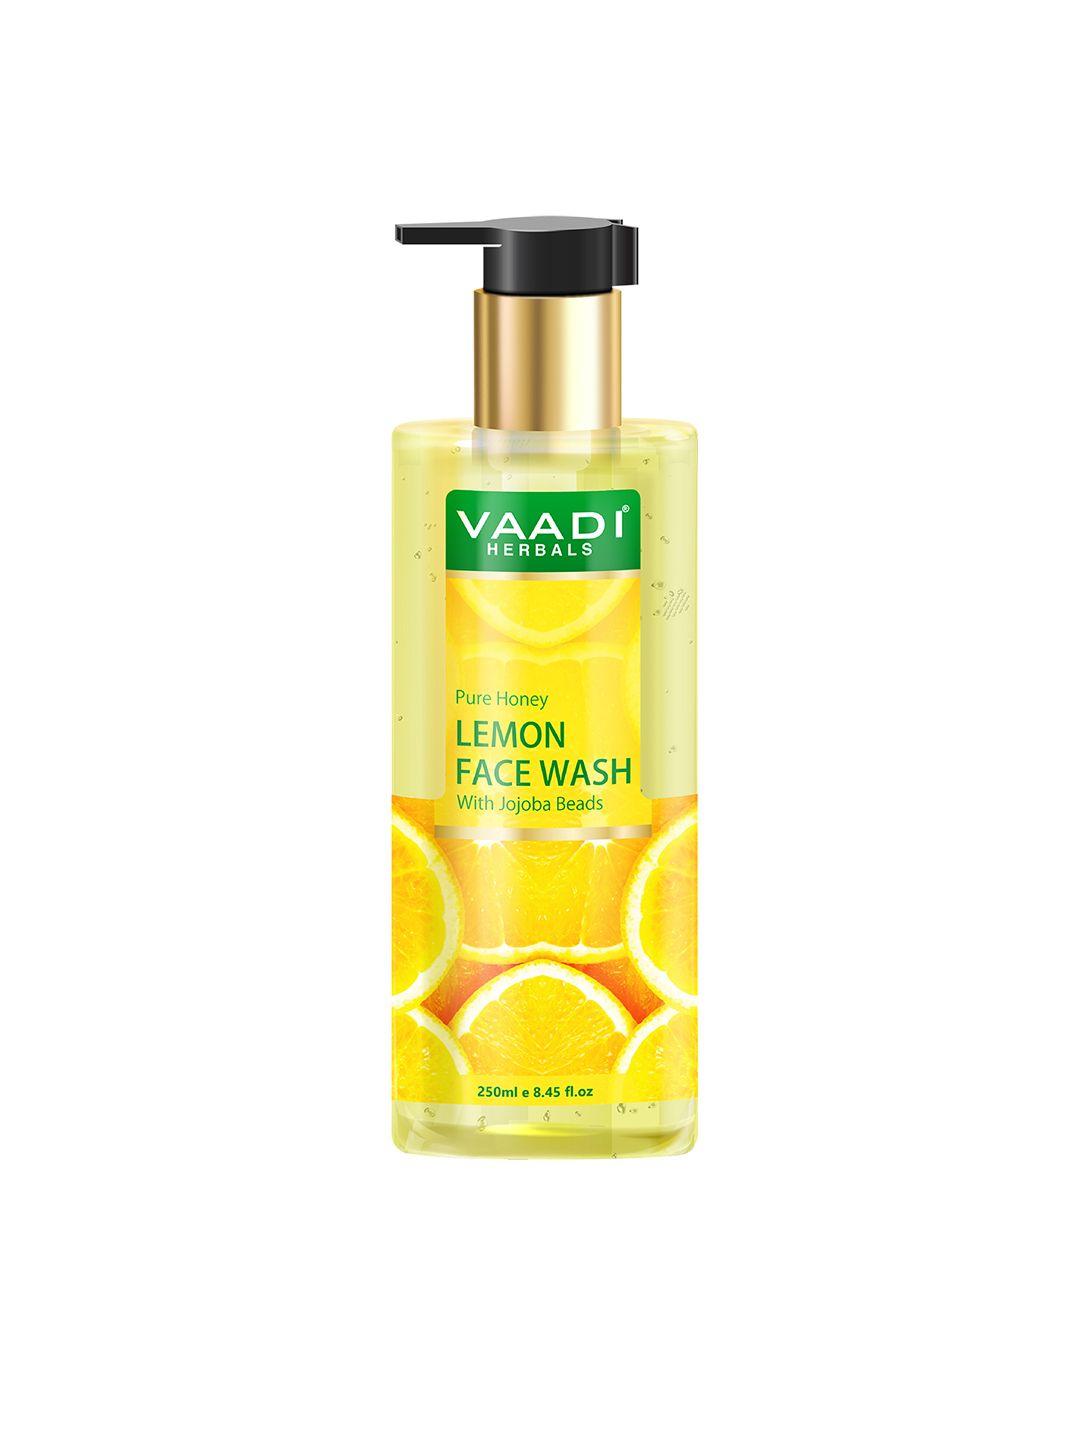 vaadi herbals pure honey lemon face wash with jojoba beads - 250ml